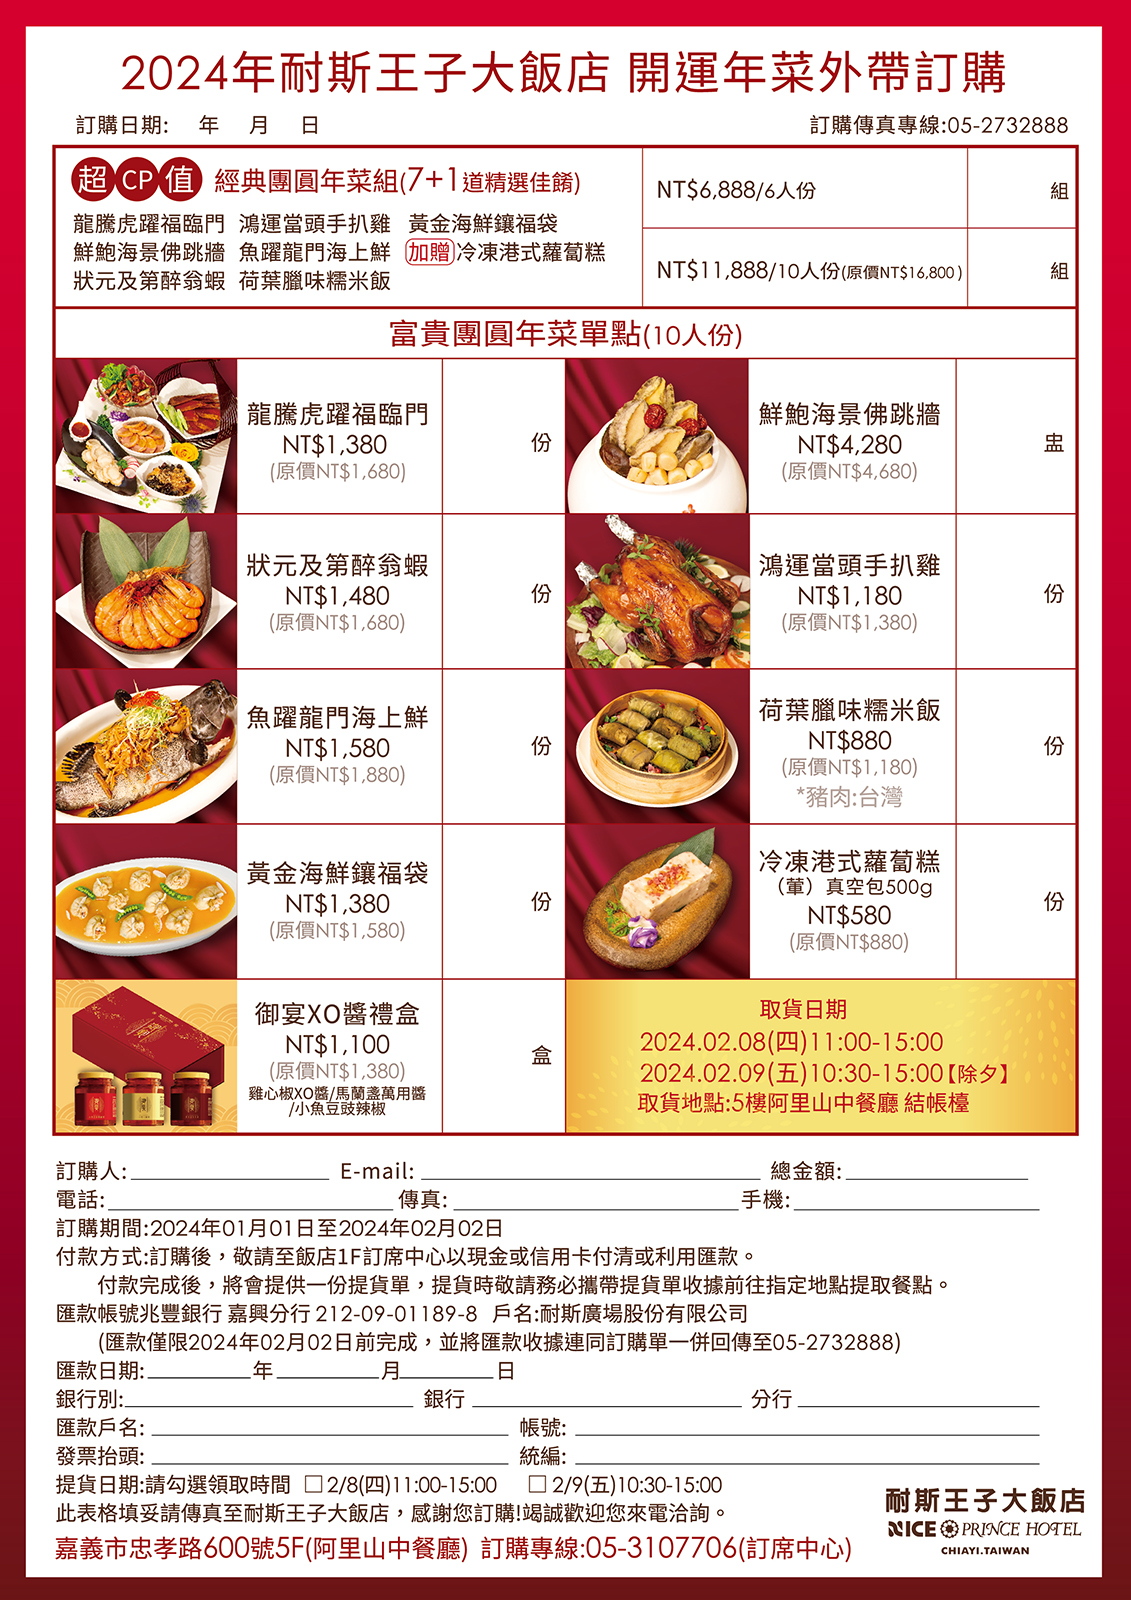 2024年菜外帶-中餐廳-官網大圖2